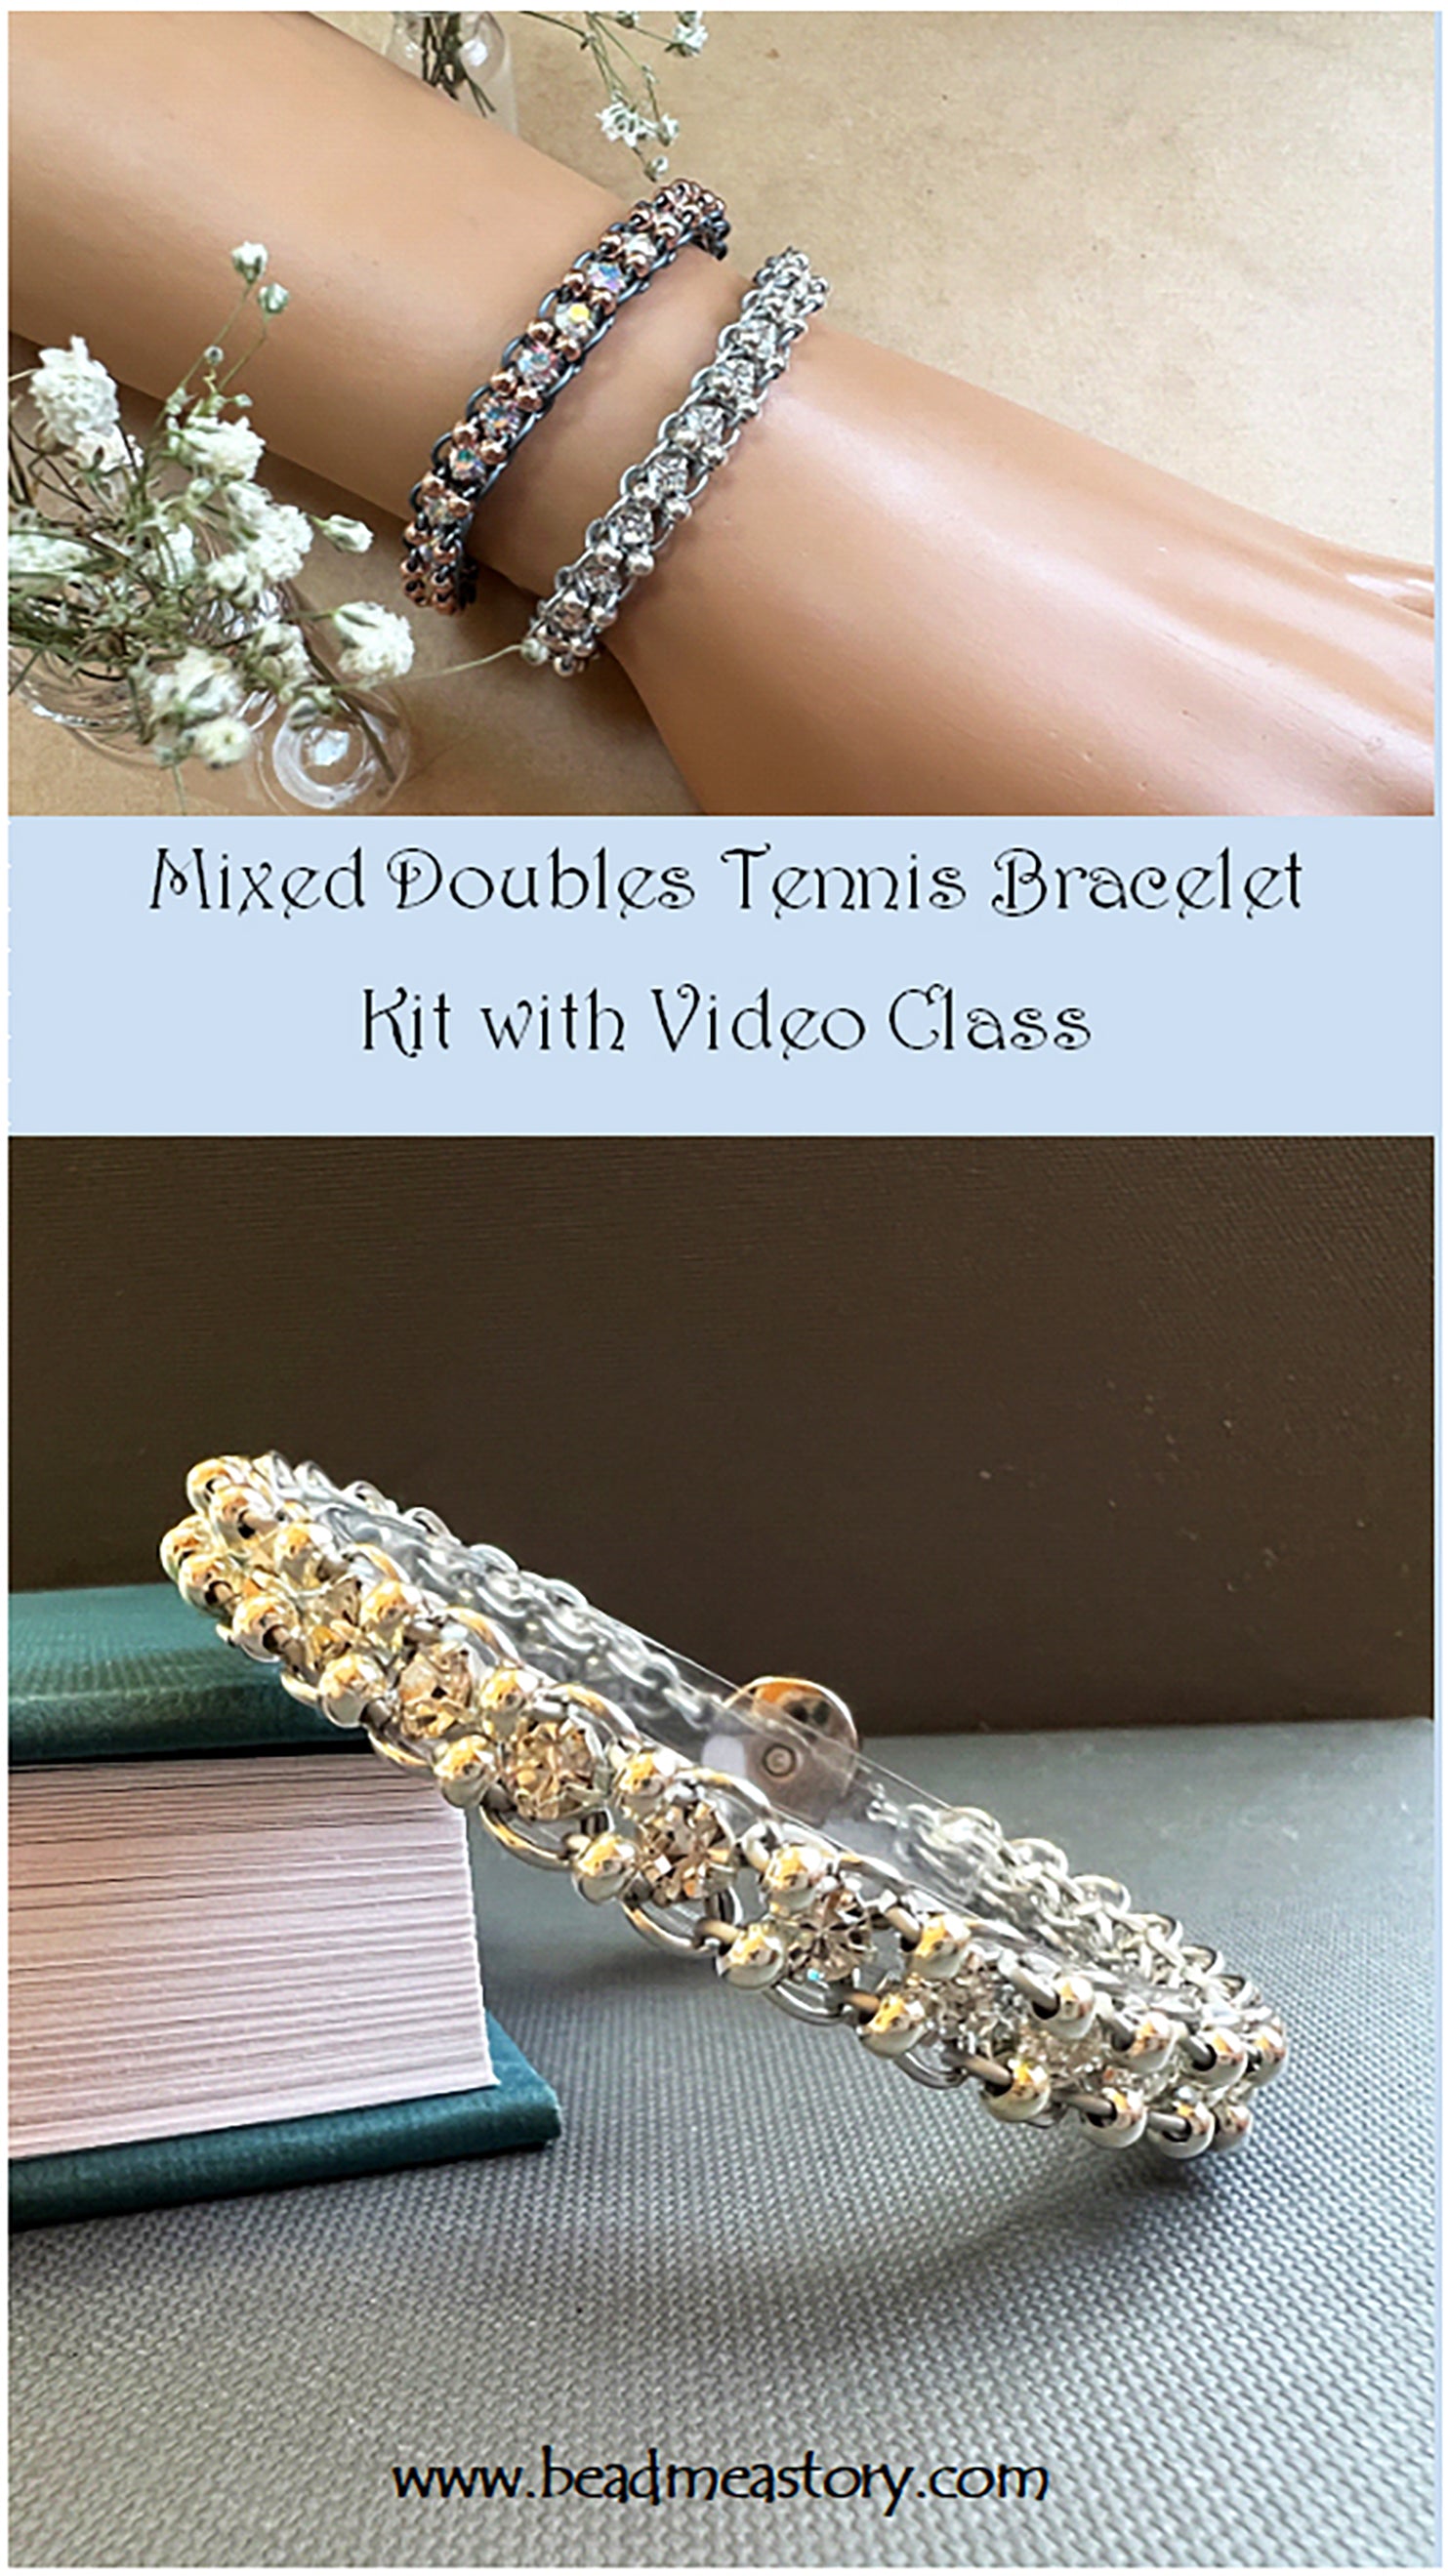 DIY Cardboard Loom and Woven Bracelet Video